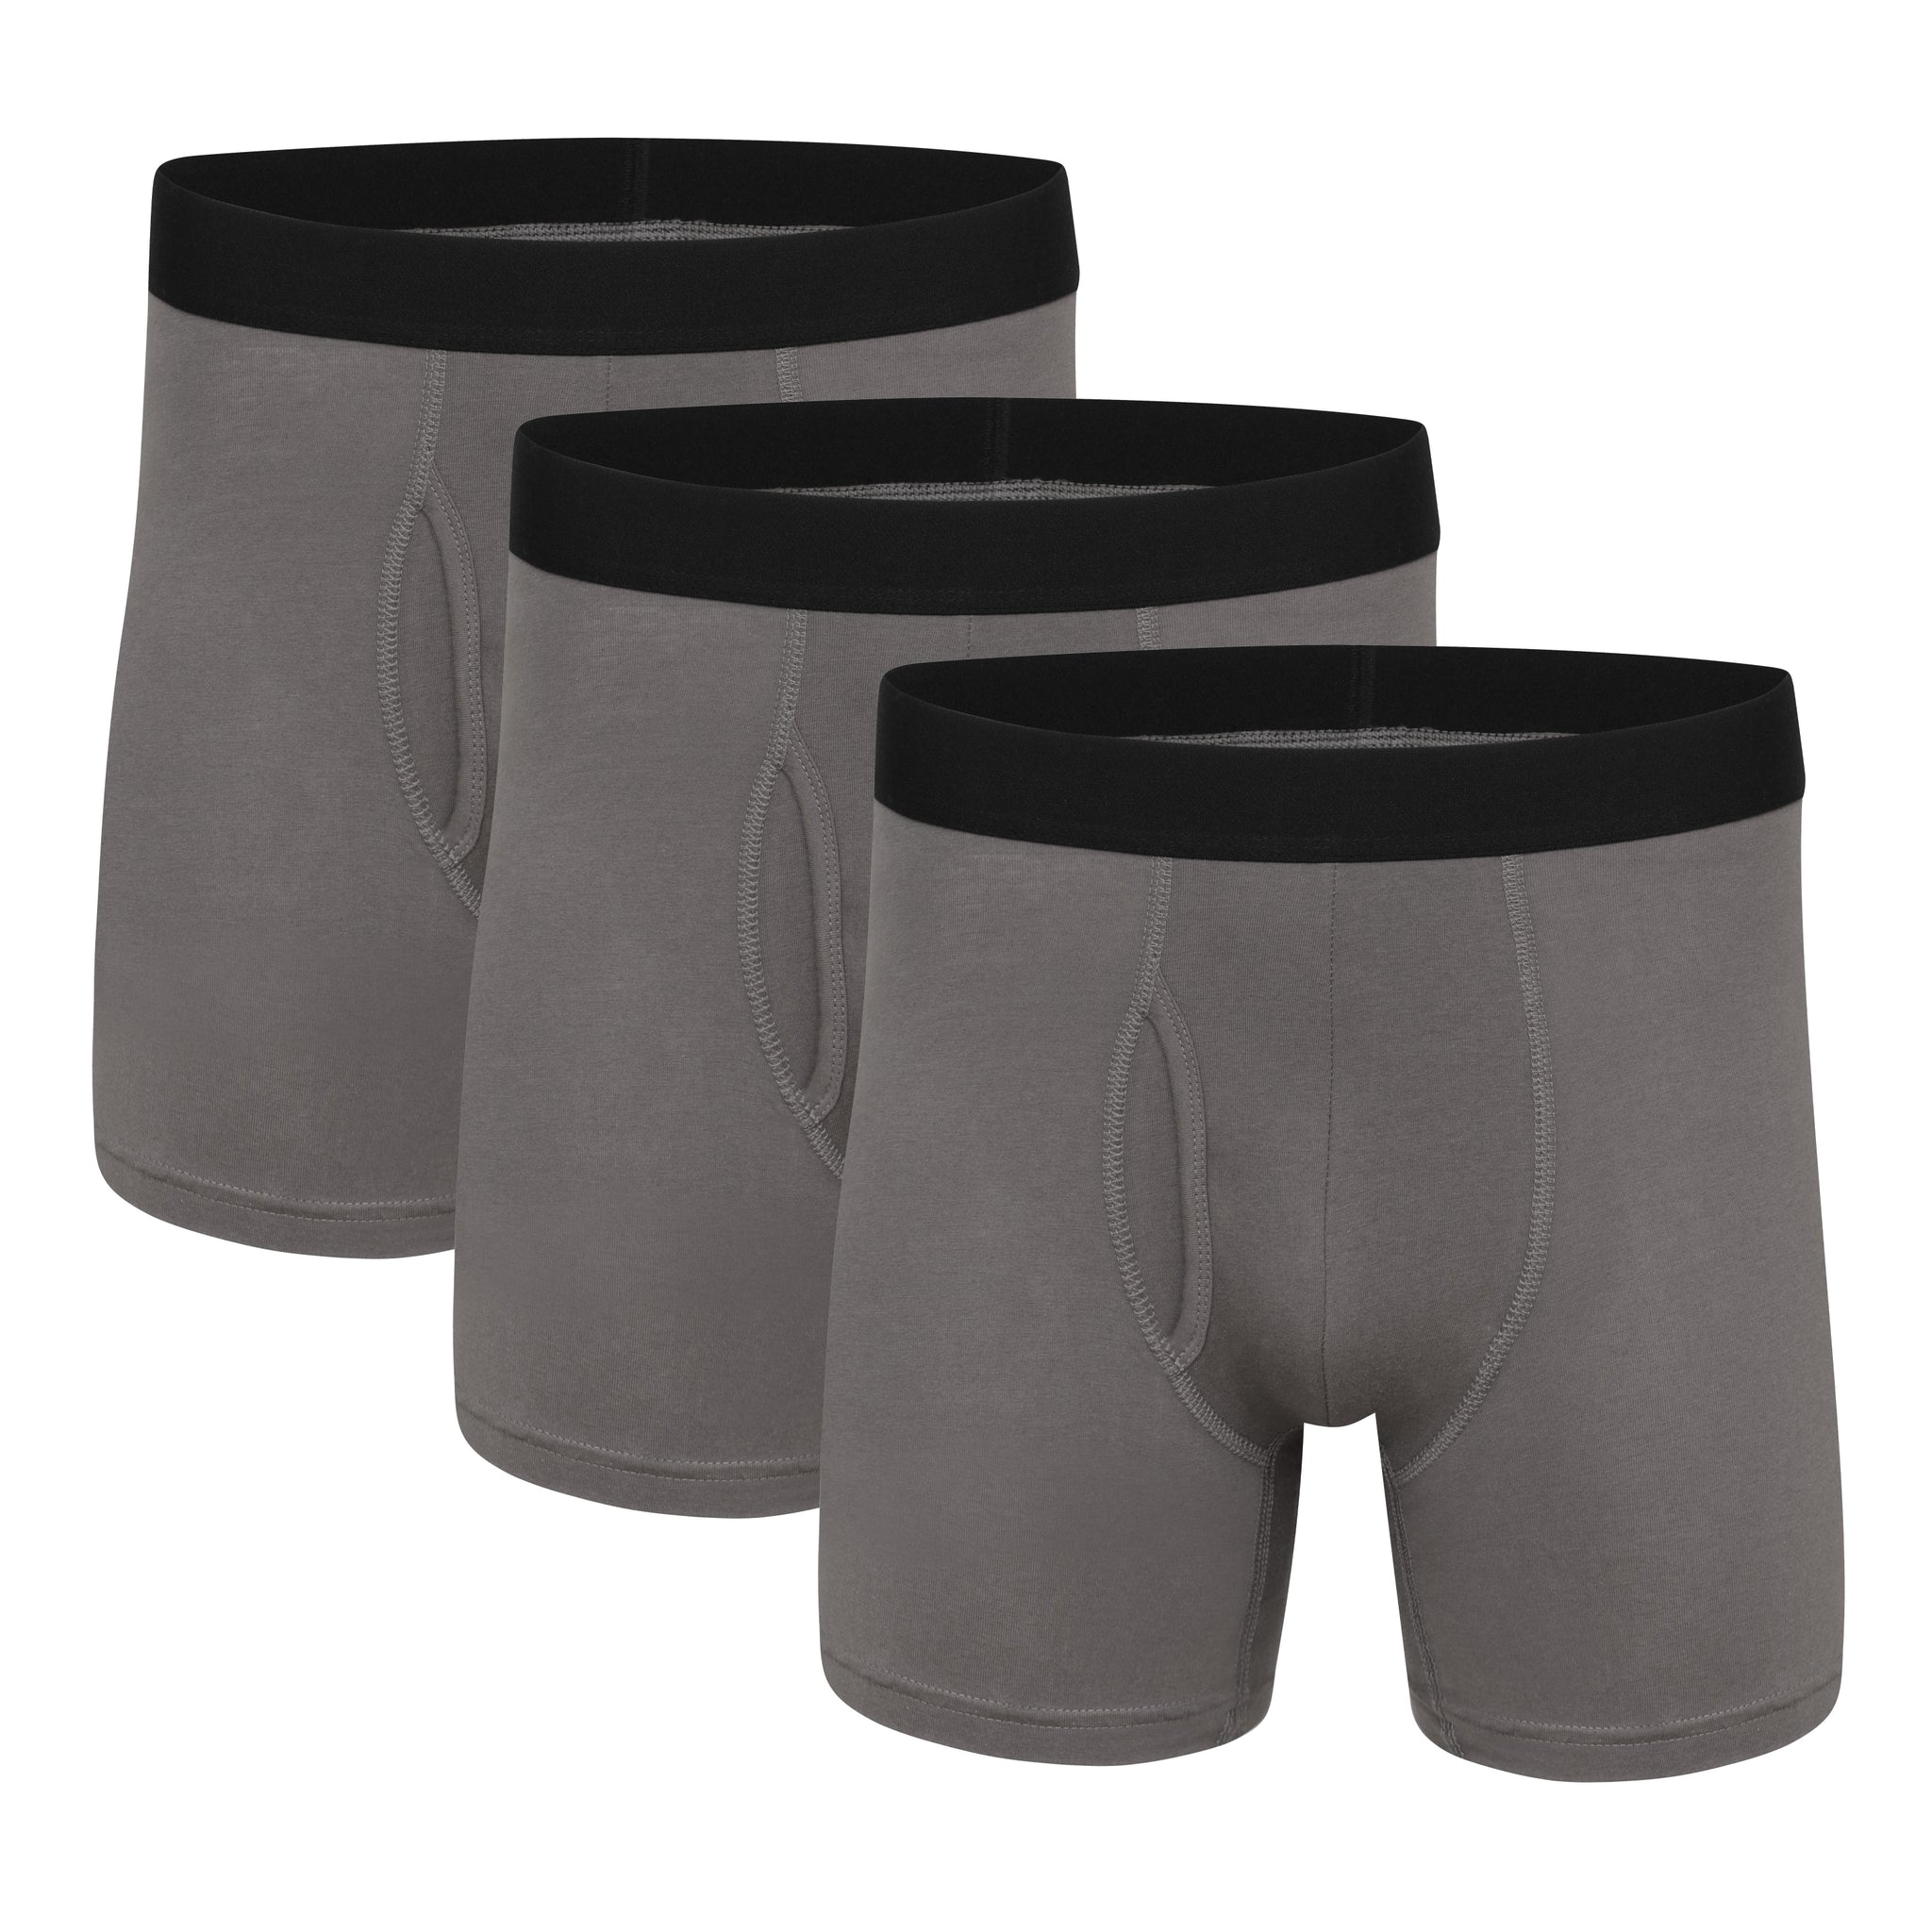 Men's Boxer Briefs, Cotton Underwear